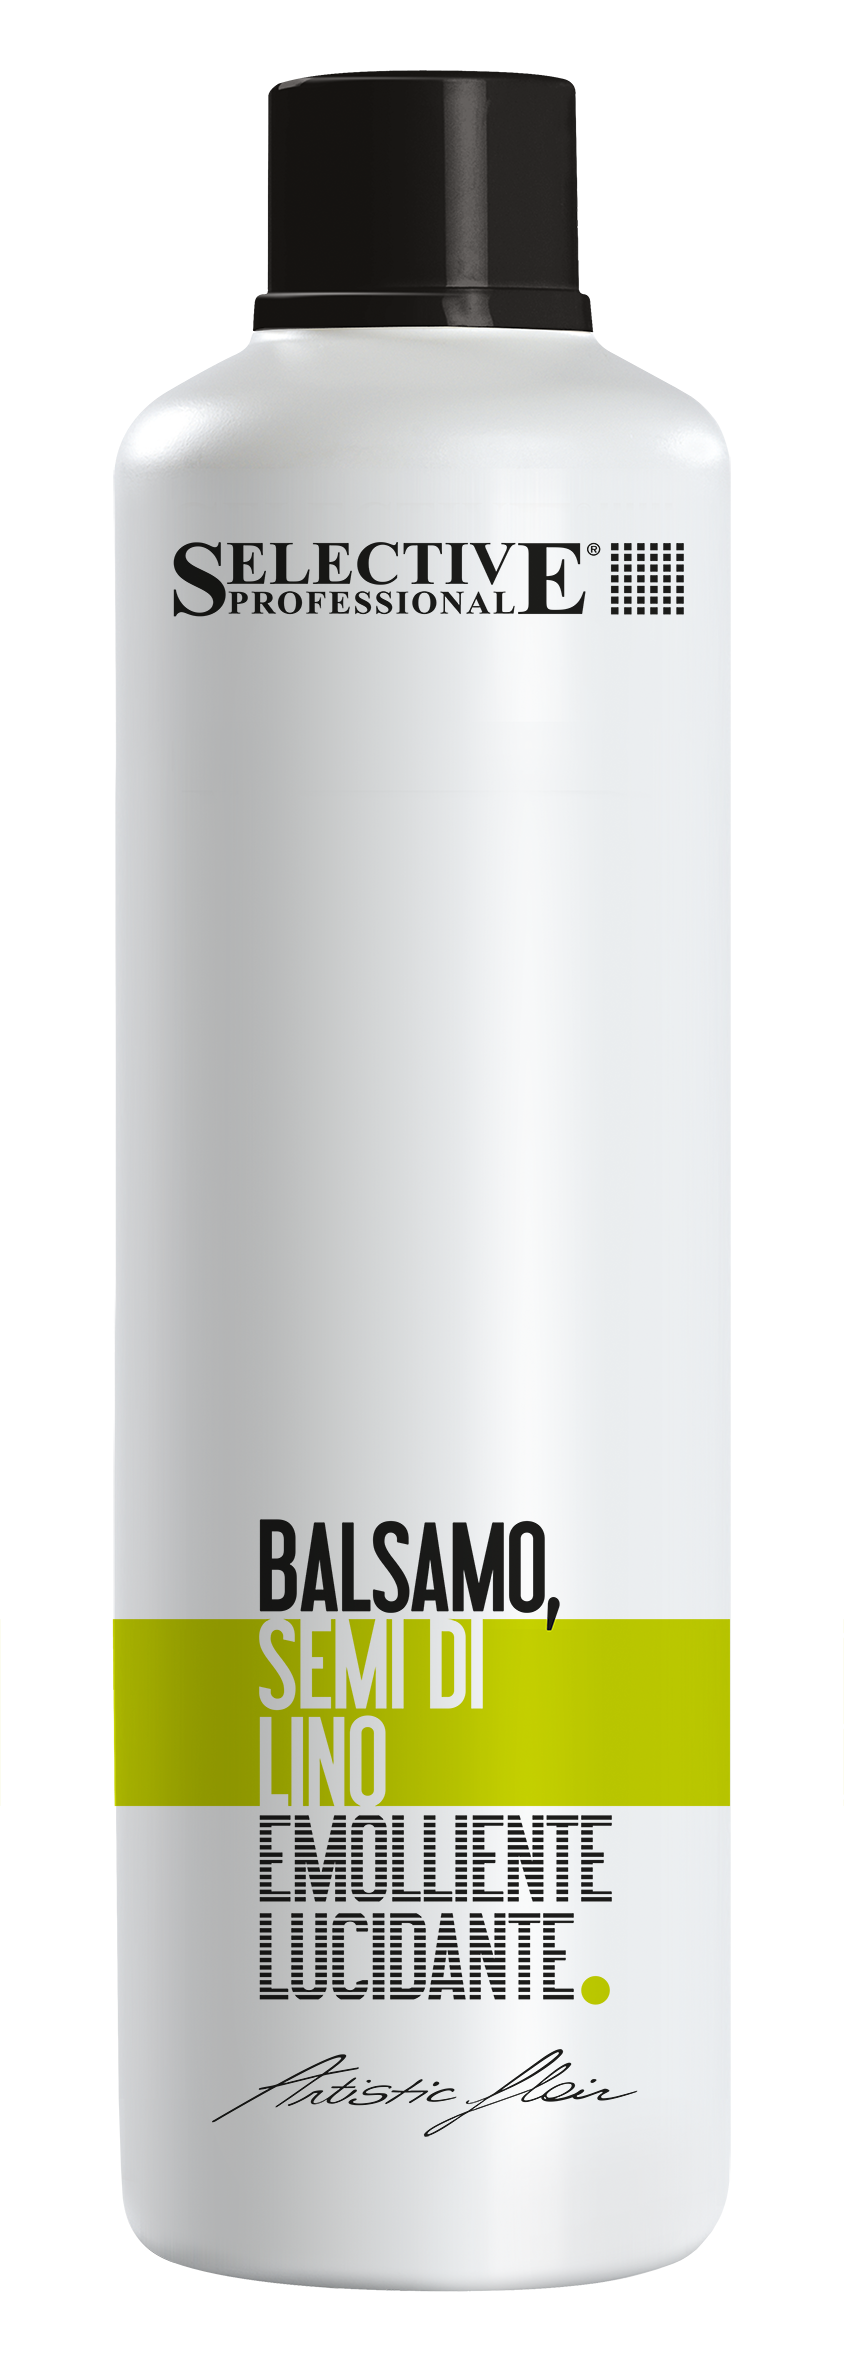 Бальзамы для волос:  SELECTIVE PROFESSIONAL -  Бальзам  питательный Семя льна  BALSAMO SEMI DI LINO    (1000 мл)